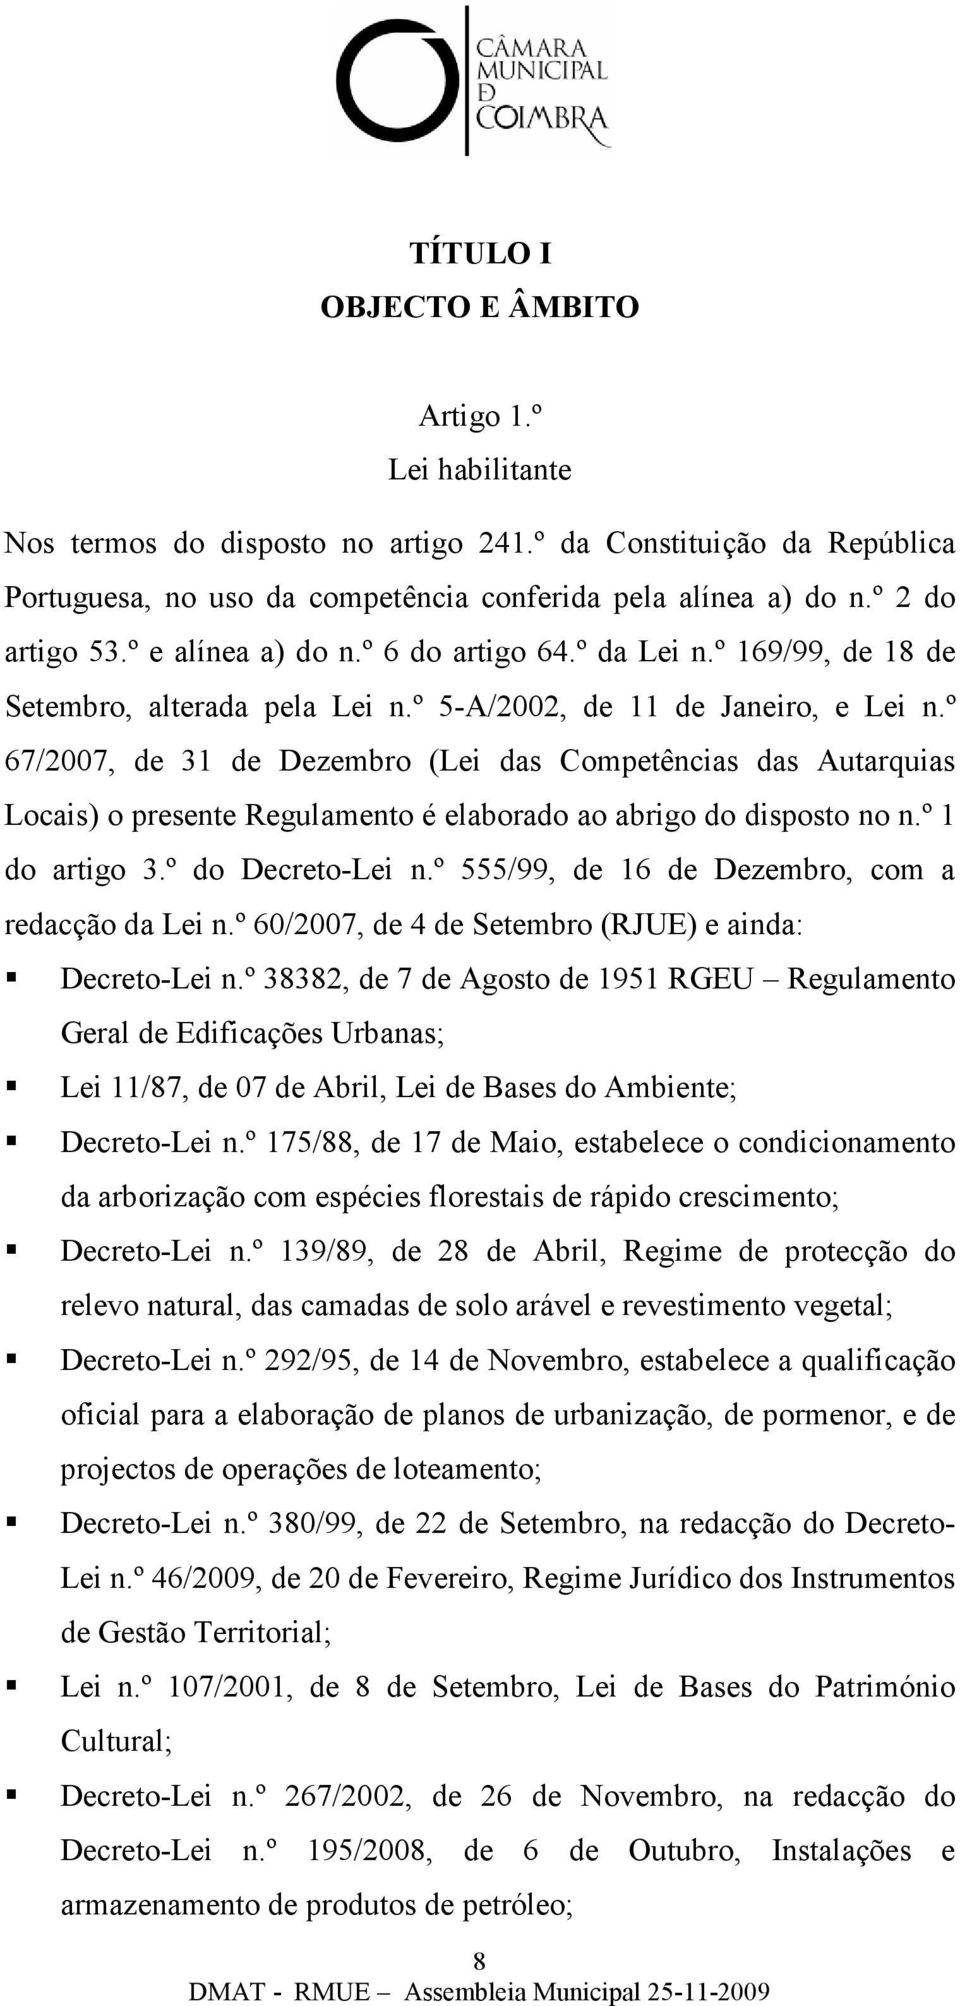 º 67/2007, de 31 de Dezembro (Lei das Competências das Autarquias Locais) o presente Regulamento é elaborado ao abrigo do disposto no n.º 1 do artigo 3.º do Decreto-Lei n.